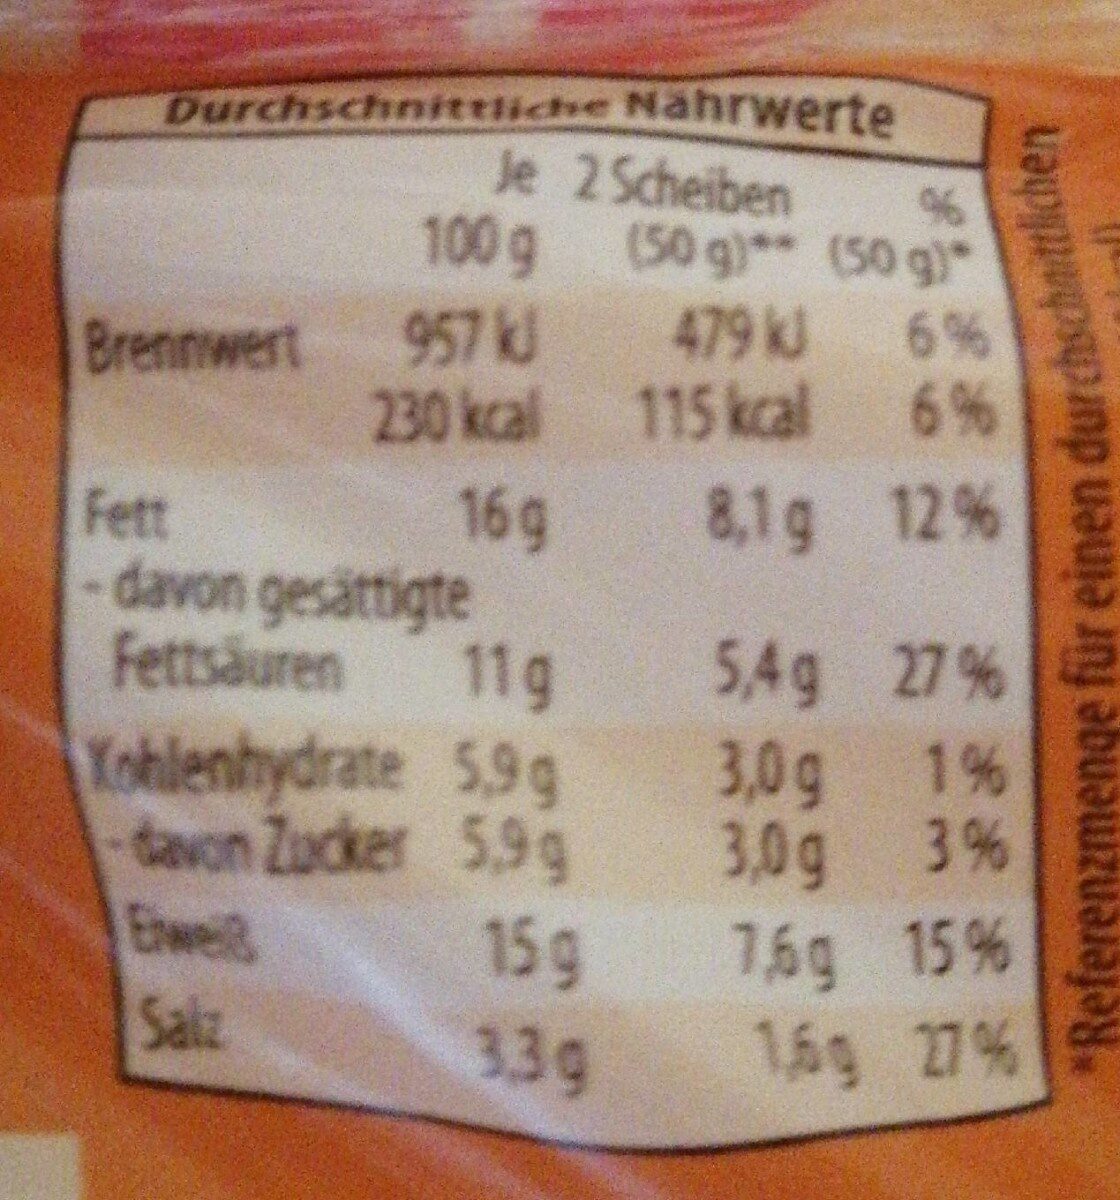 Toast Schmelzscheiben - Nutrition facts